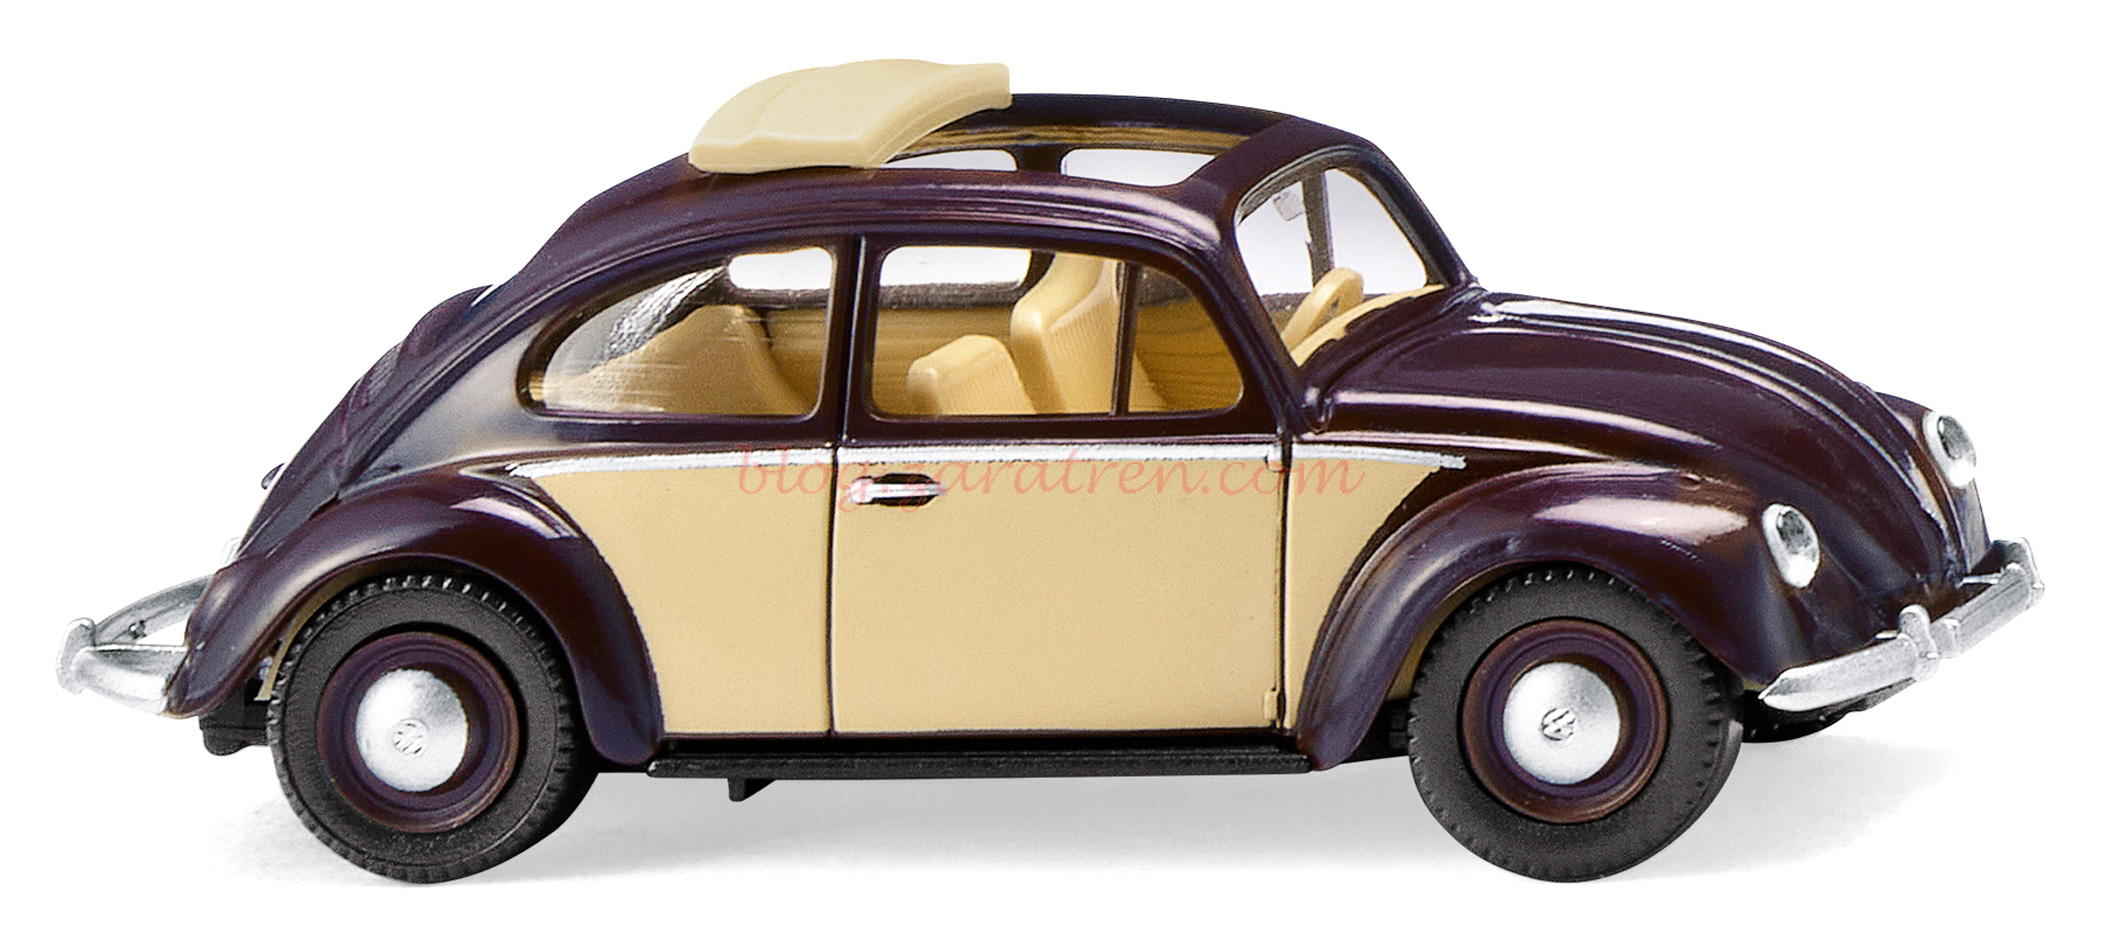 Wiking – VW Escarabajo 1200 con techo plegable, Color Crema y granate, Escala H0, Ref: 079433